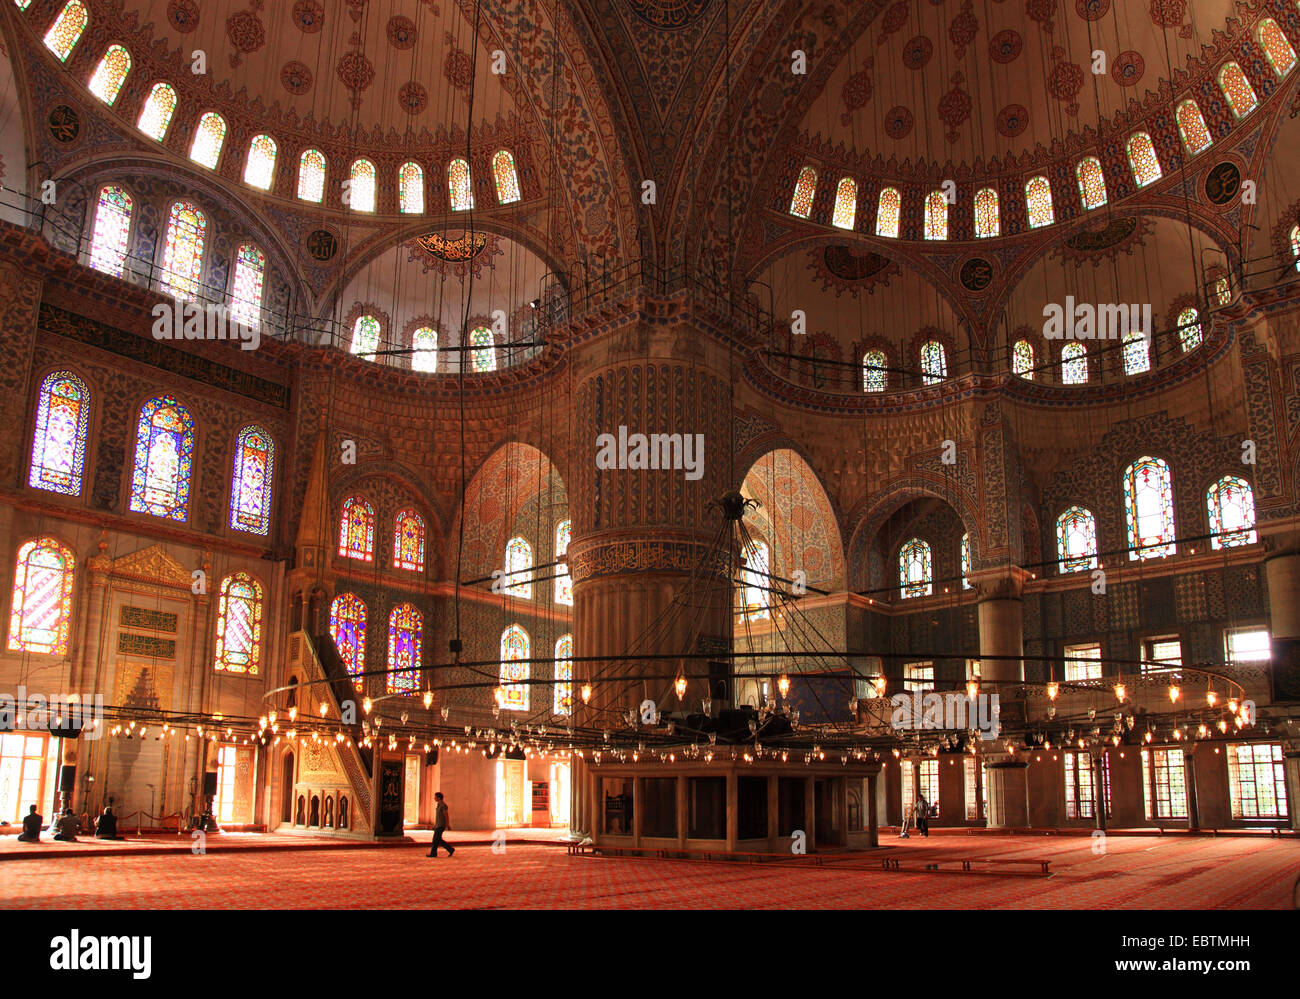 Sultan Ahmed Moschee, blaue Moschee, Innenbereich, Türkei, Istanbul Stockfoto